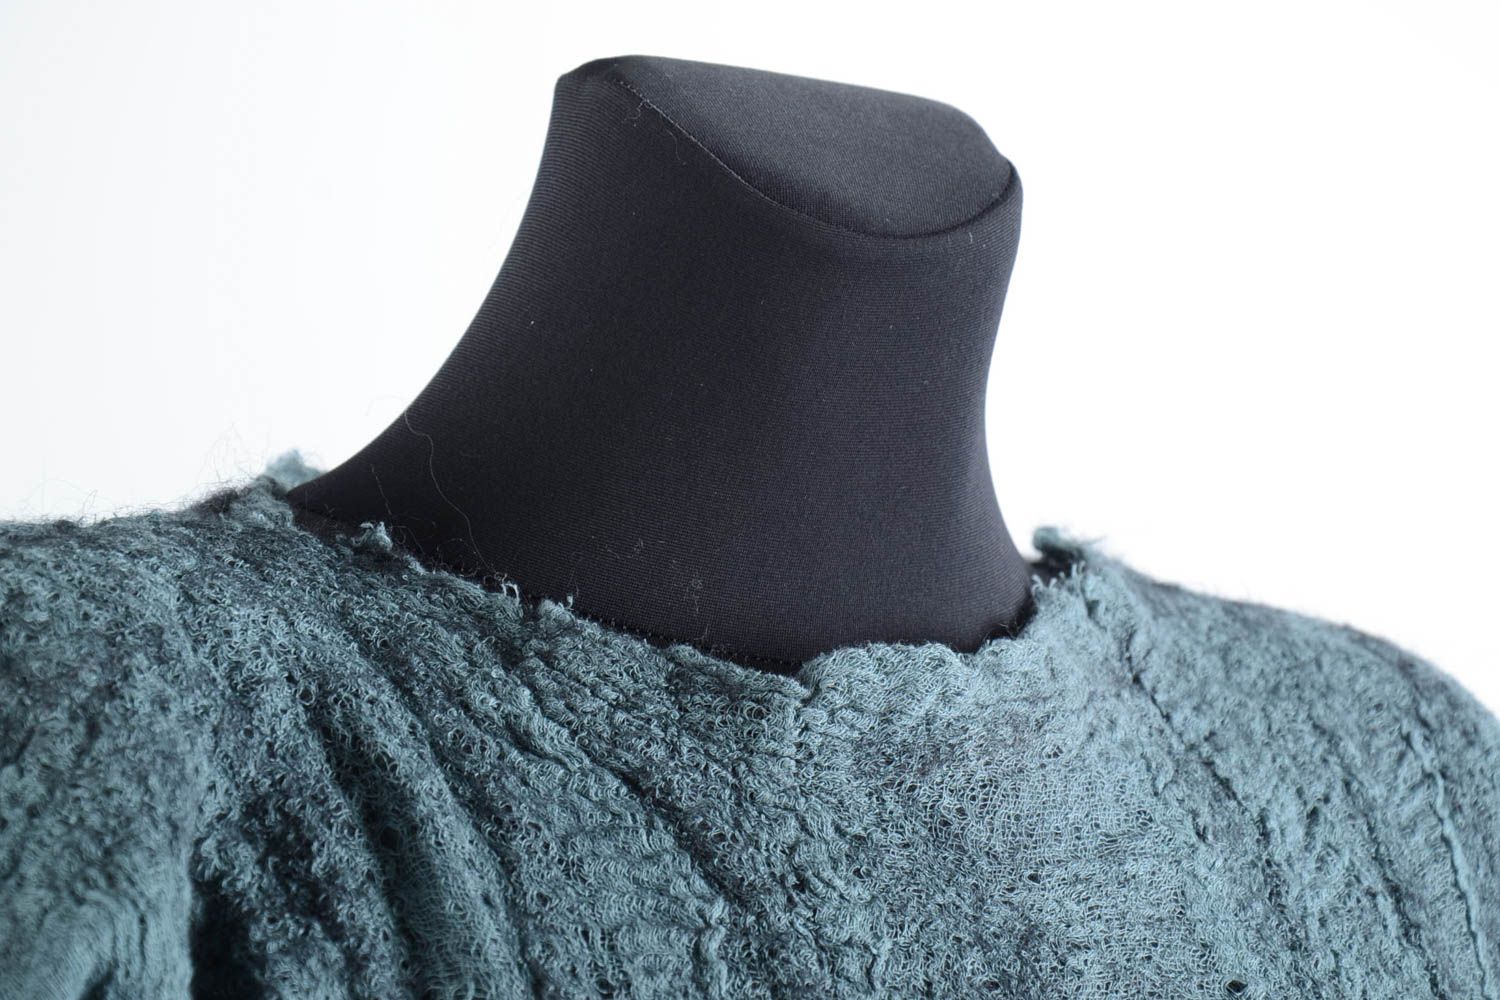 little black wool winter dress for women 2274 – XiaoLizi